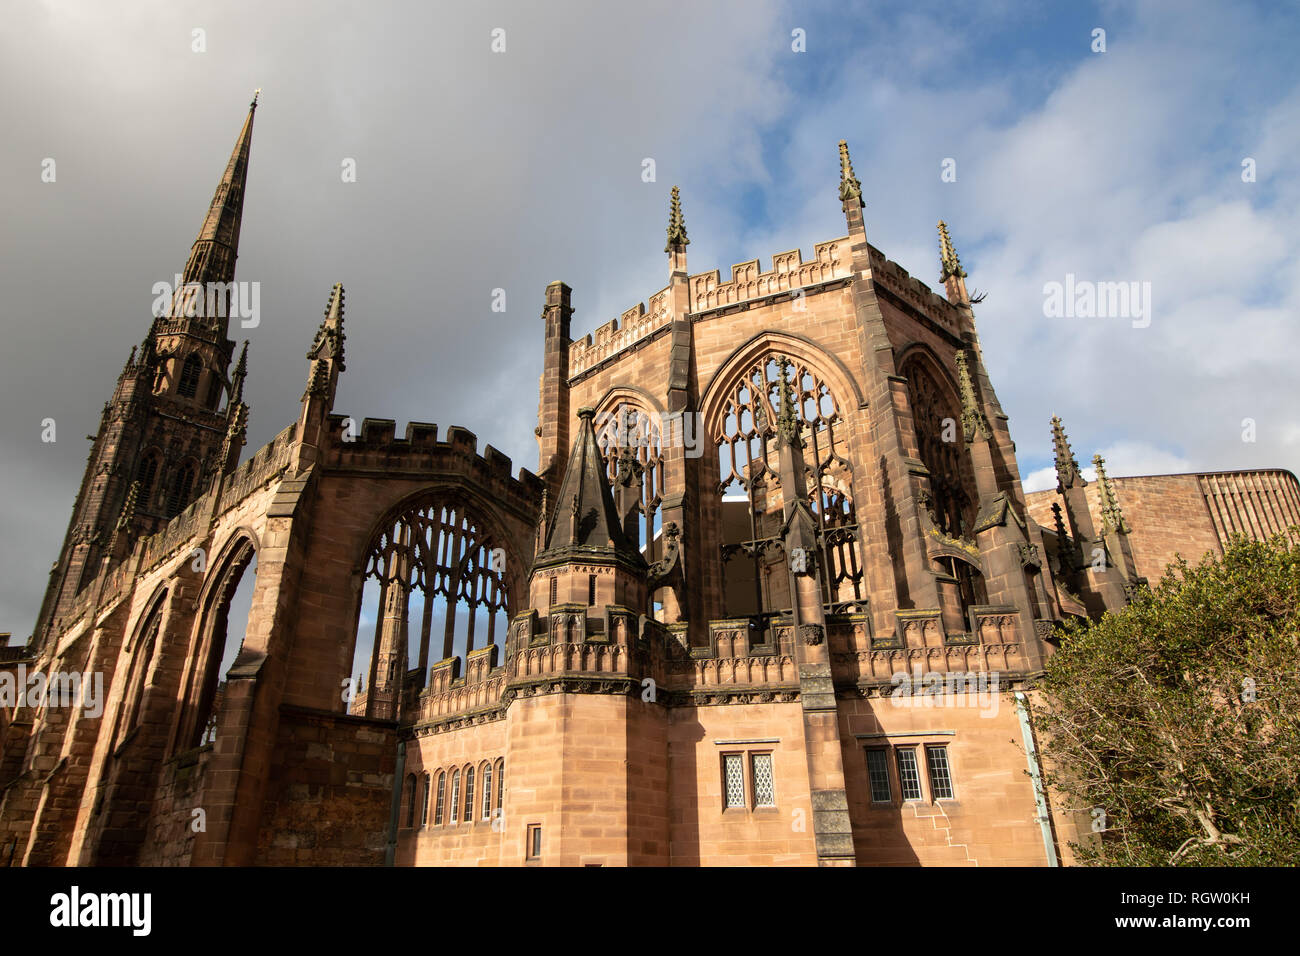 Les ruines de l'ancienne cathédrale de Coventry qui a été bombardée pendant la seconde guerre mondiale Banque D'Images